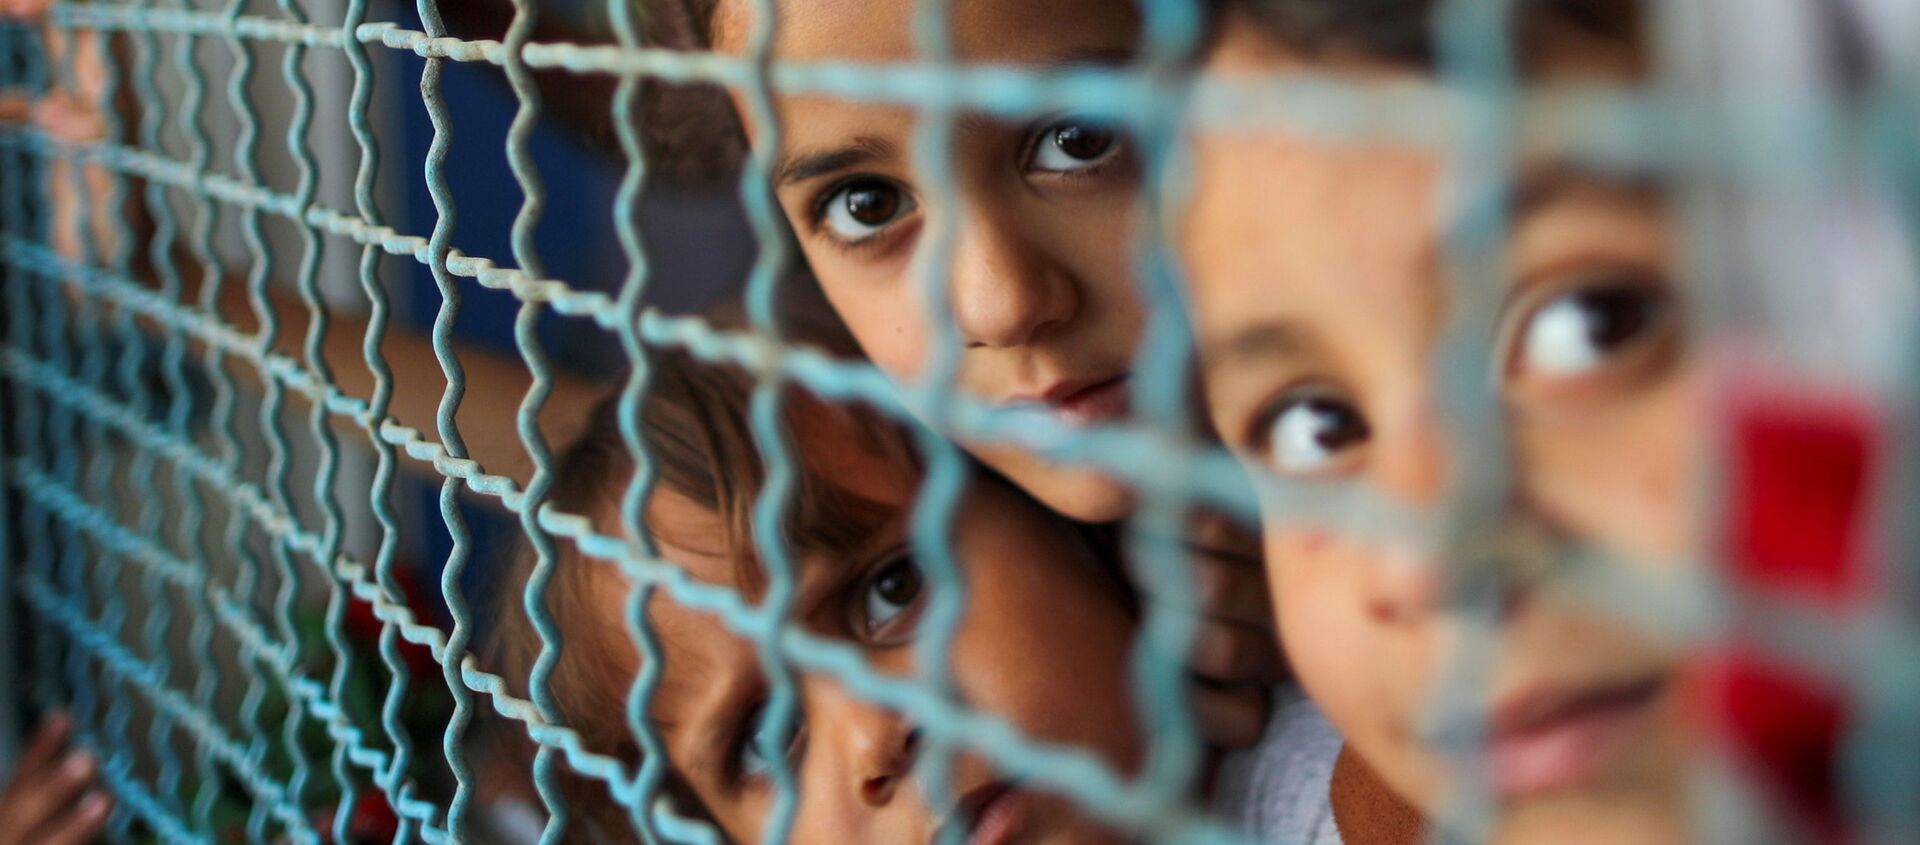 Trẻ em Palestine phải ra khỏi nhà bởi các cuộc không kích và pháo binh của Israel đang nhìn qua lan can cửa sổ của trường học do Liên hợp quốc điều hành, nơi họ trú ẩn ở thành phố Gaza - Sputnik Việt Nam, 1920, 04.06.2021